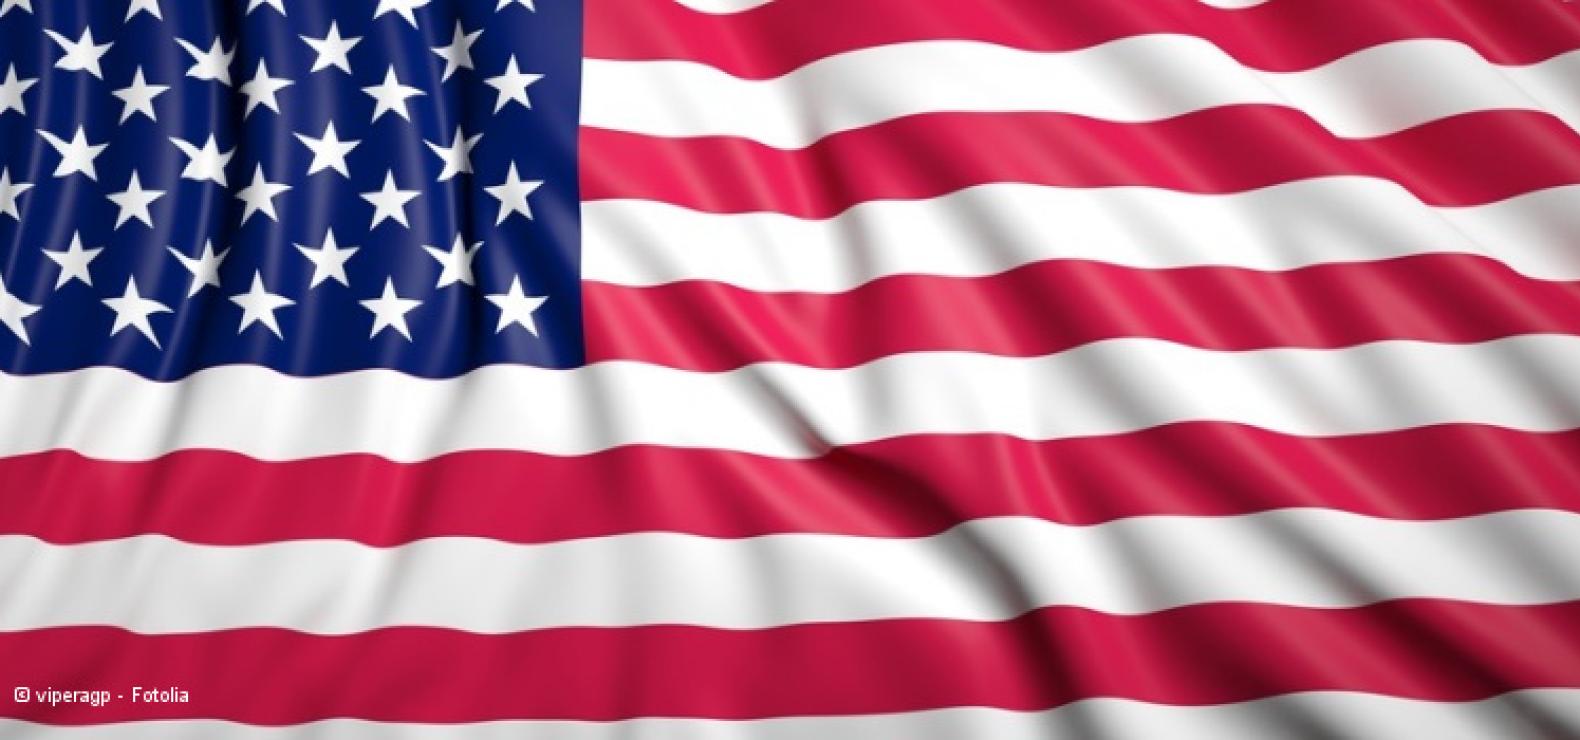 Flagge der USA mit Faltenwurf: rote und weiße Streifen und dazu links oben ein blaues Rechteck mit weißen Sternen